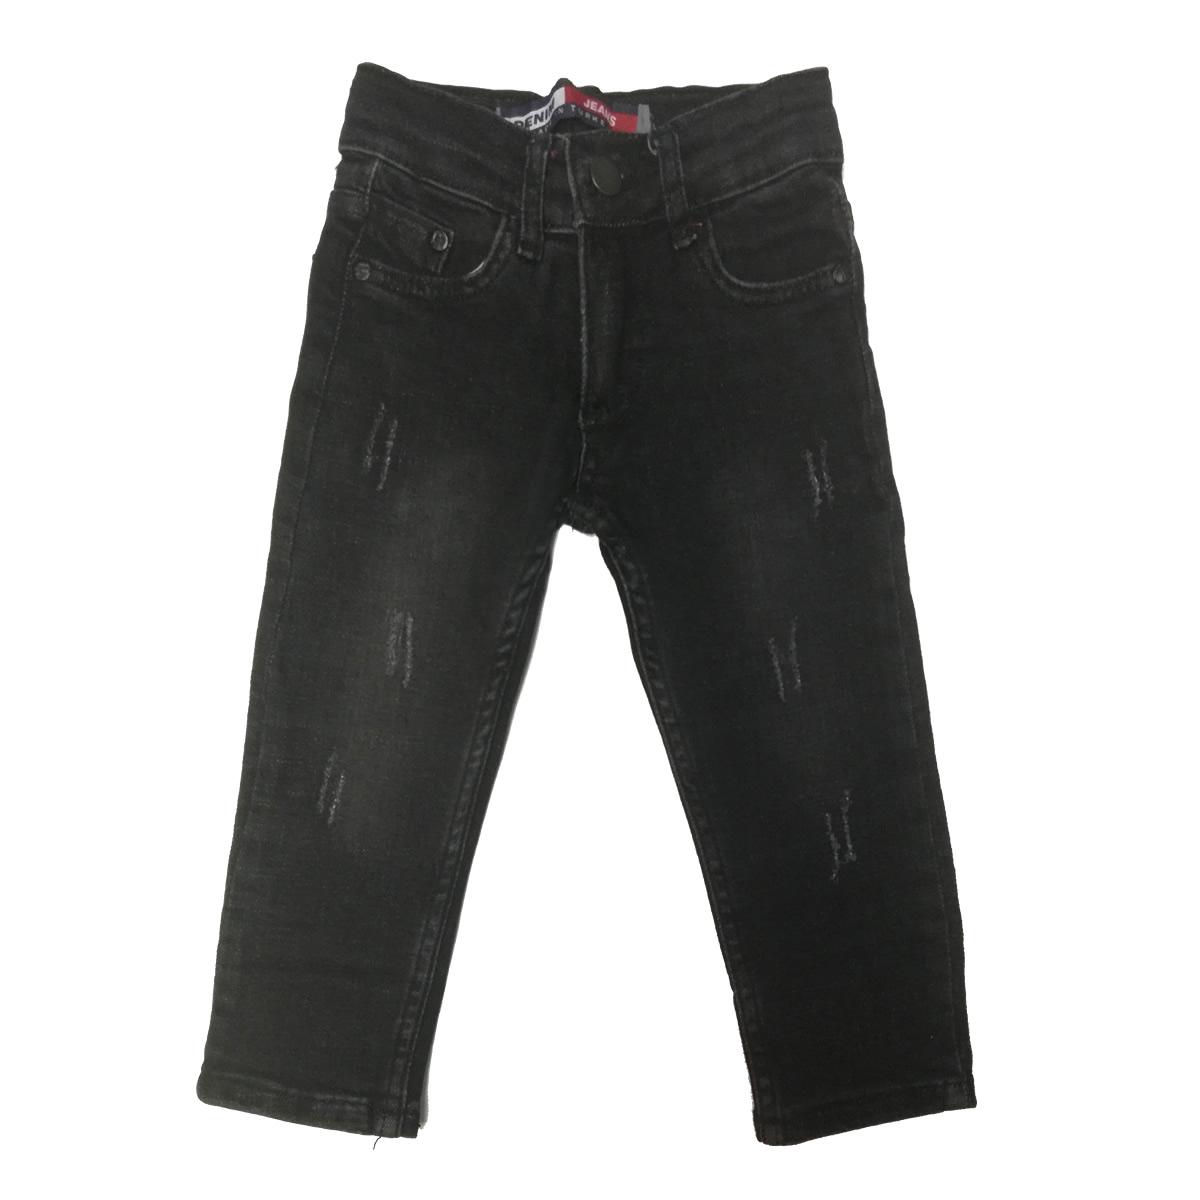 Дитячі джинси, чорні (820-20), Dowes